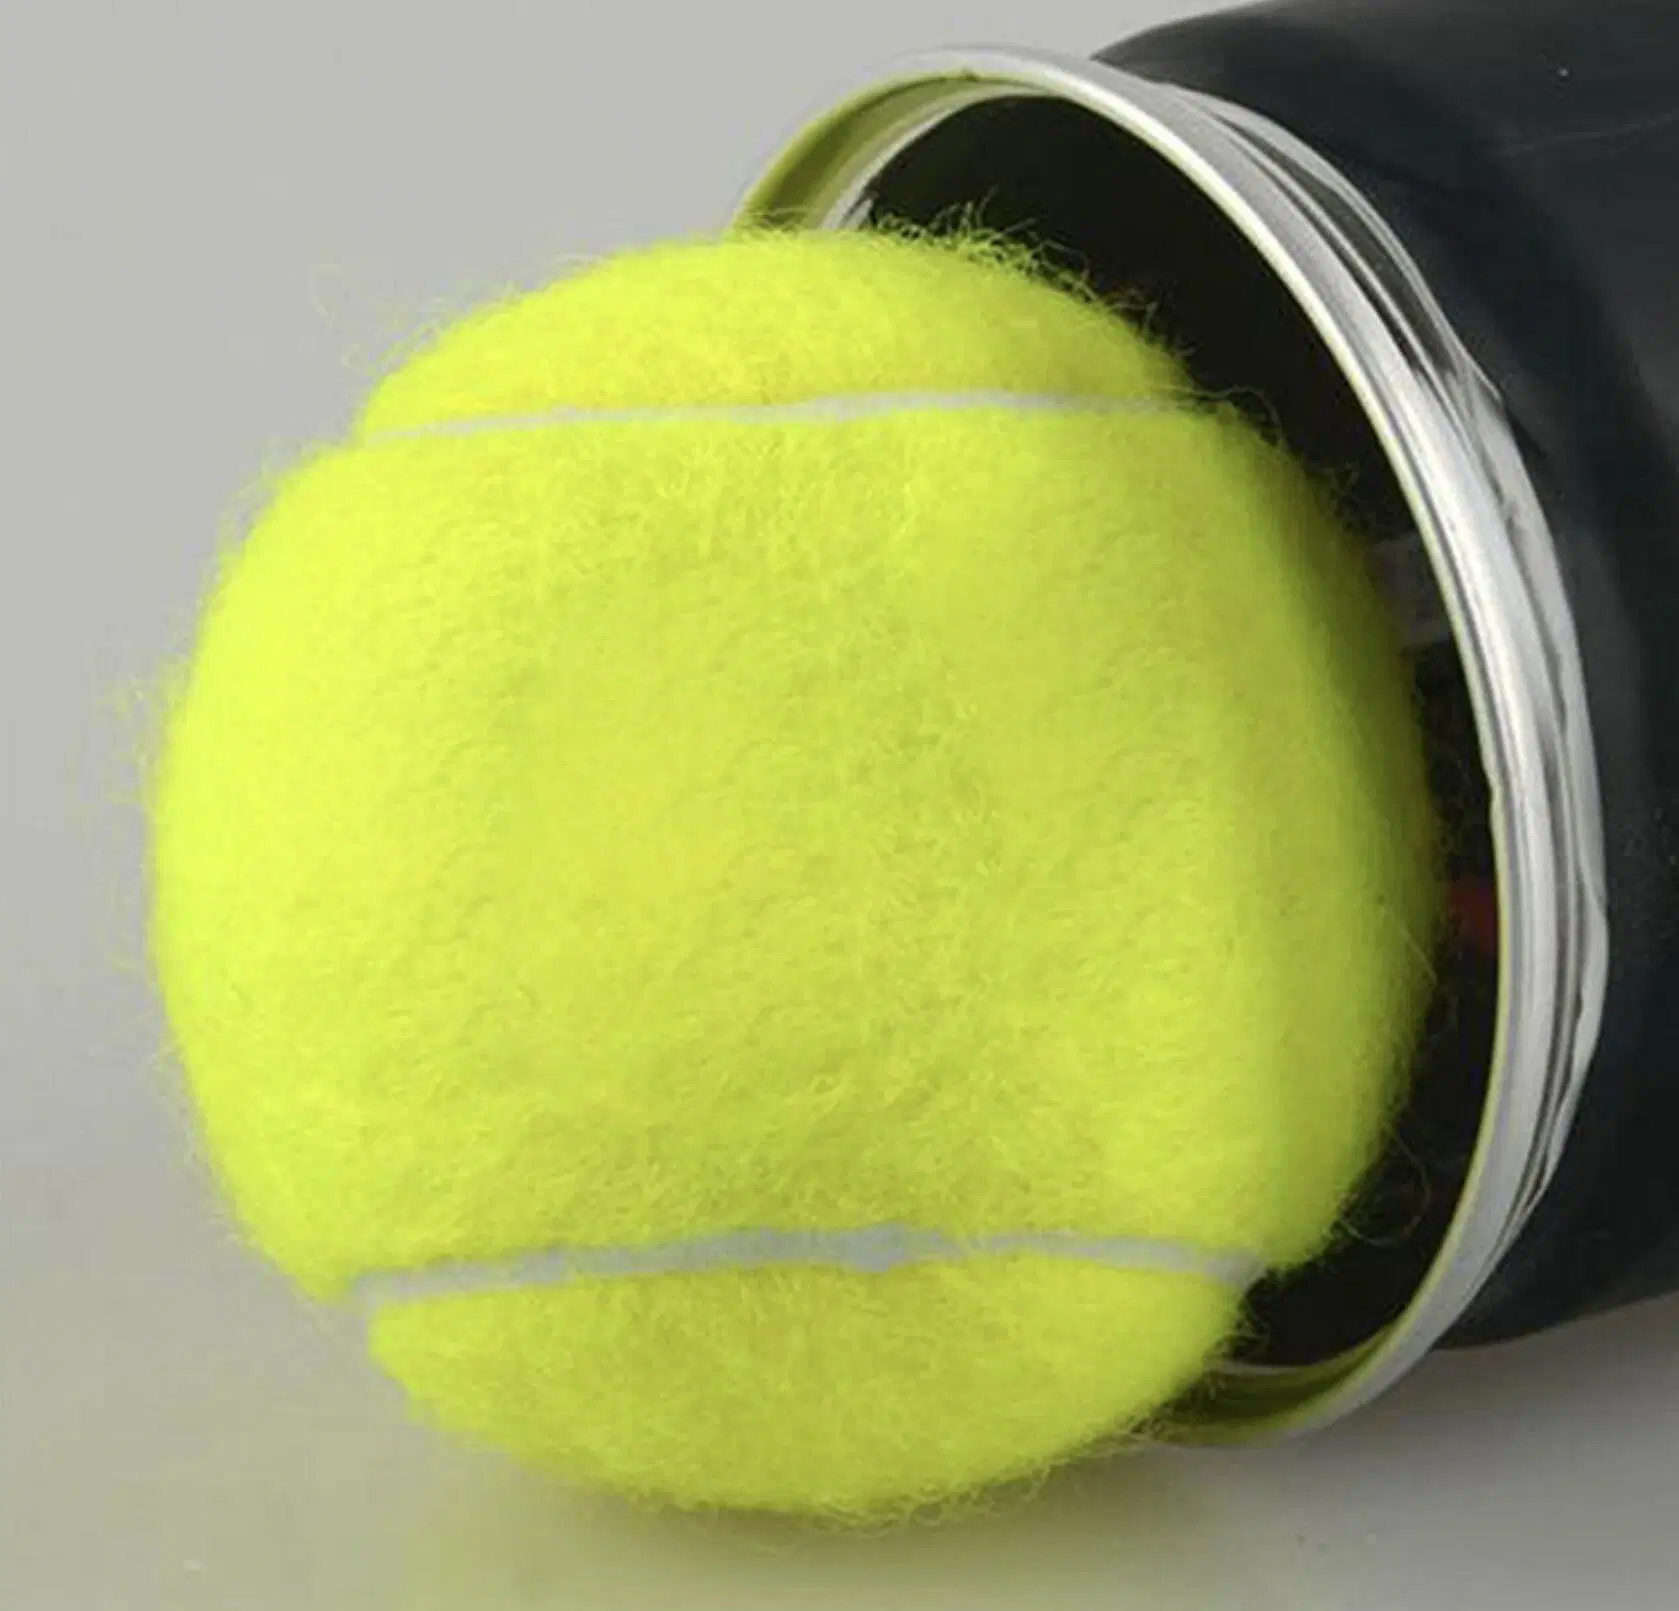 OEM 3balles dans un pot haut de la concurrence de rebond balle de tennis